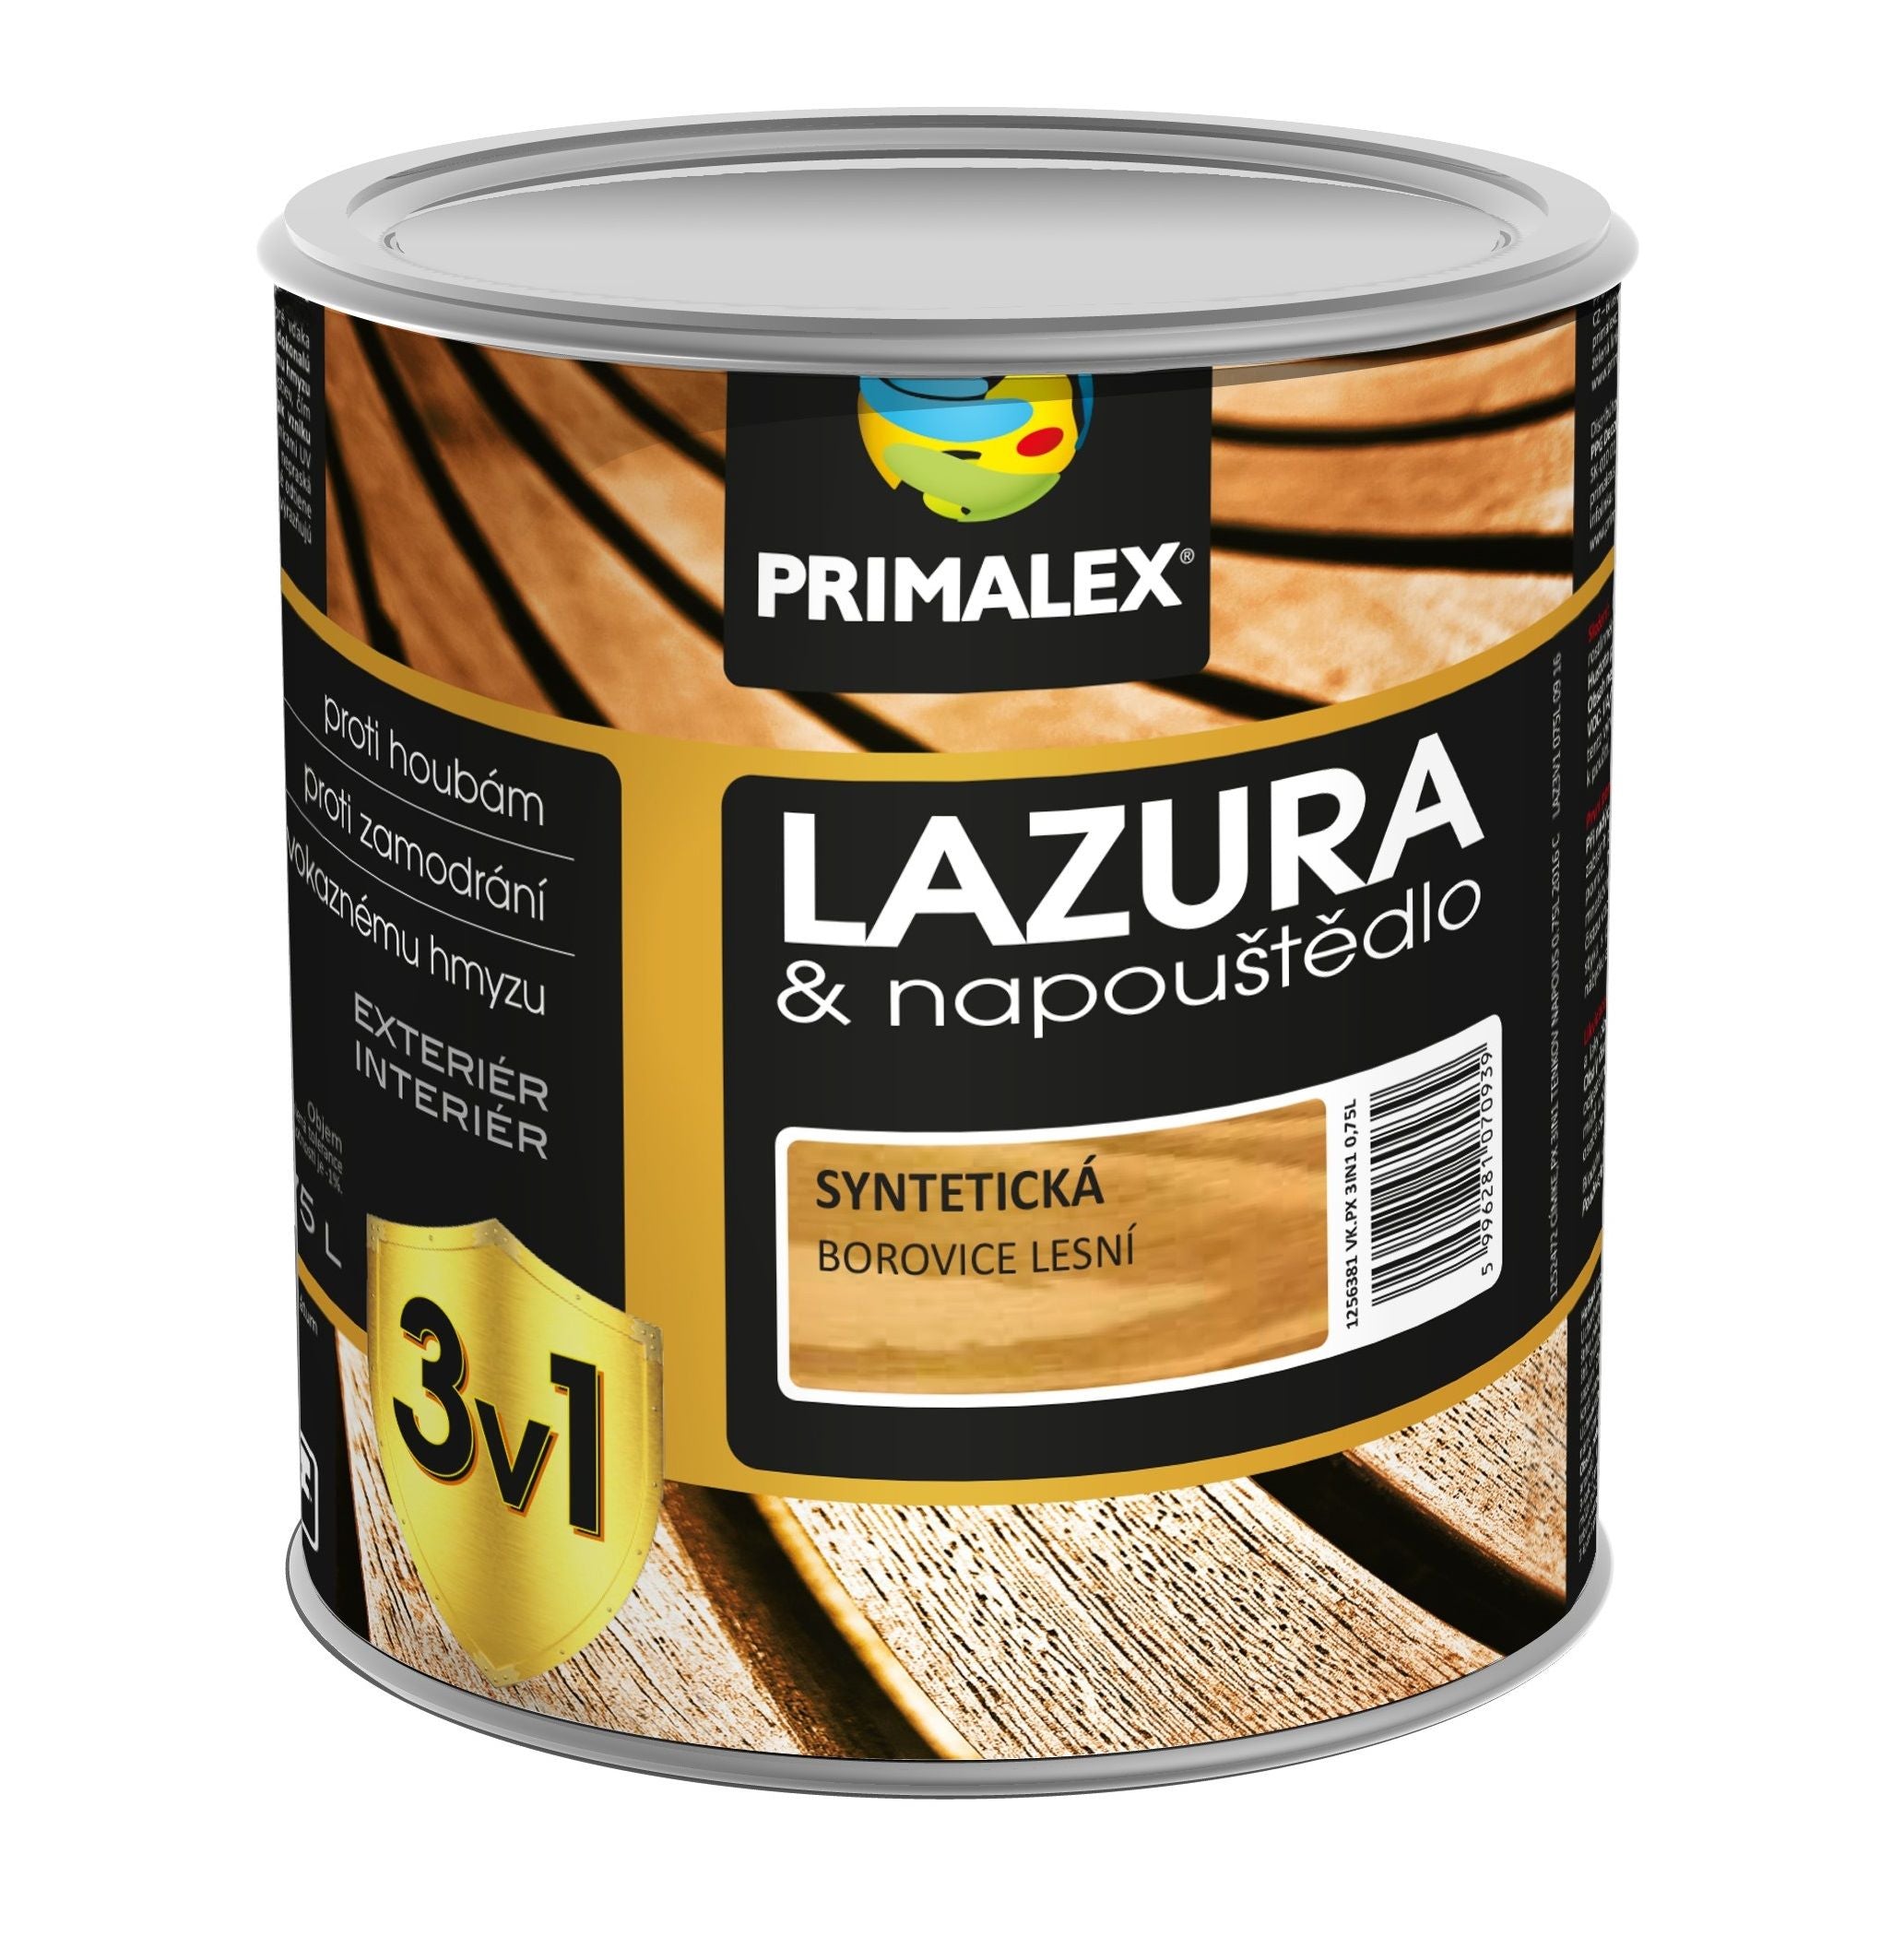 PRIMALEX LAZURA & napouštědlo 3v1 na dřevo barevná